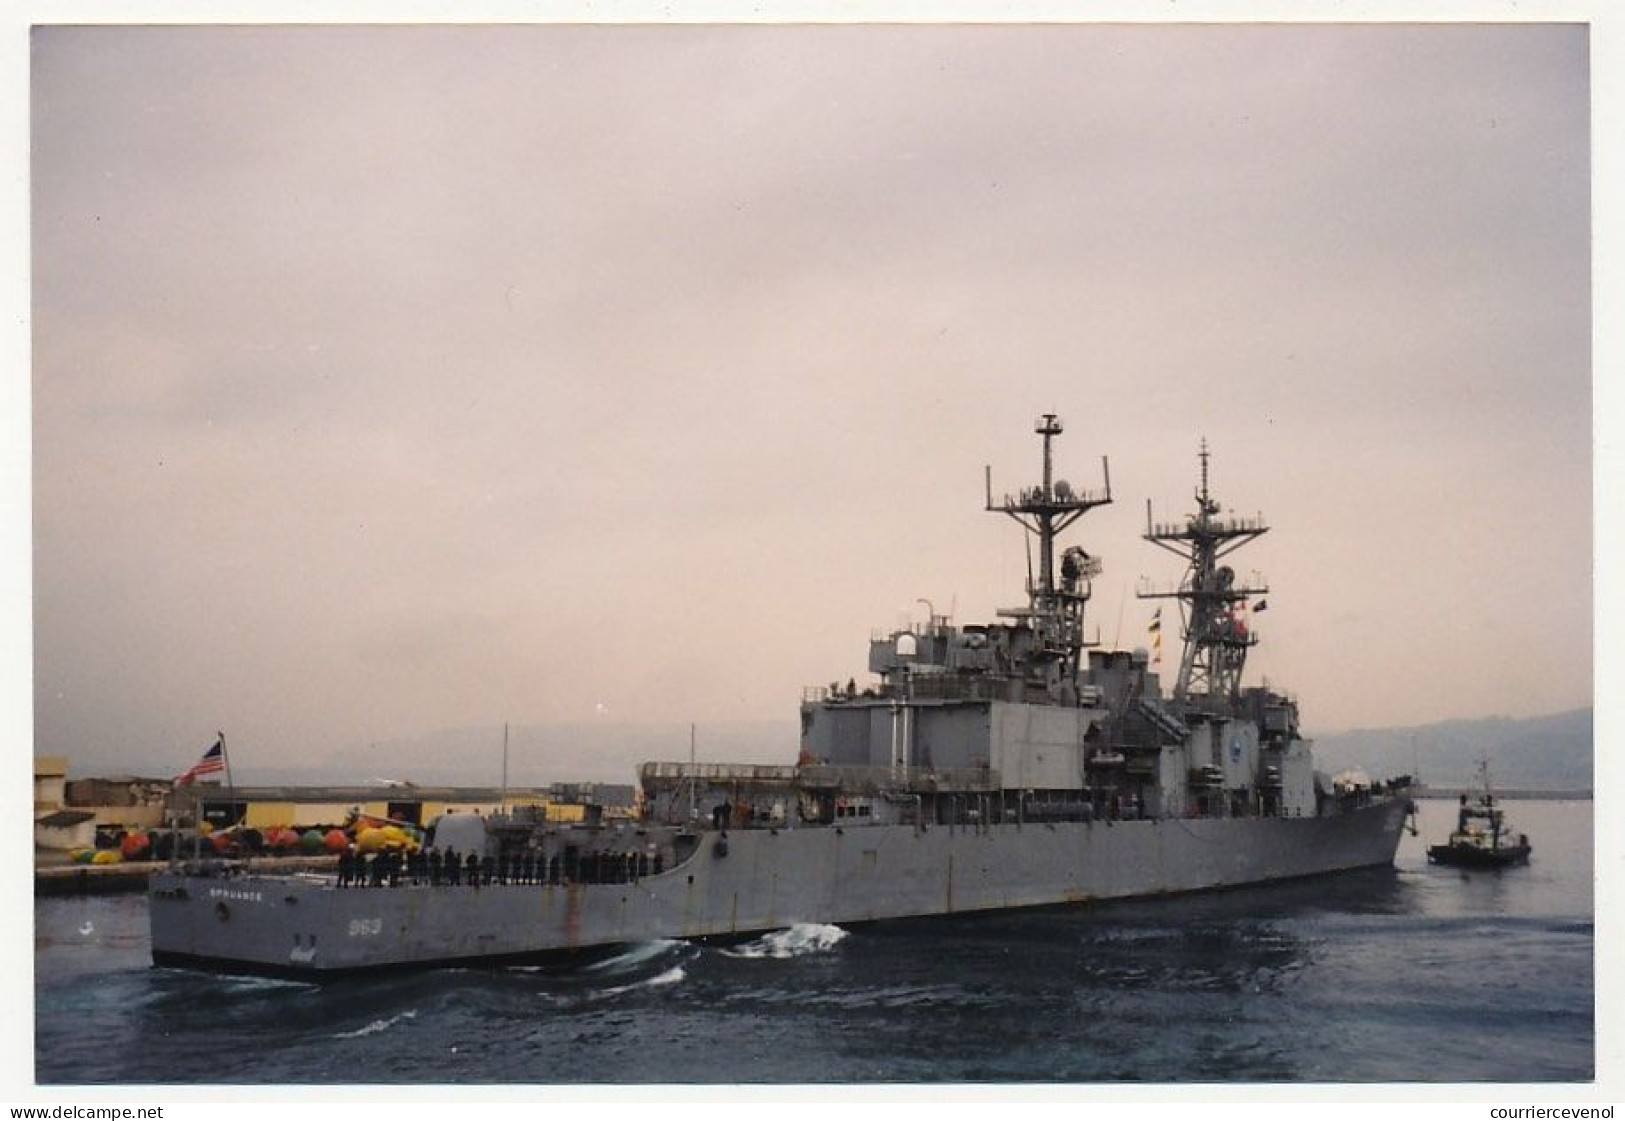 2 Photos Couleur Format Env. 10cm X 15cm - Destroyer USS Spruance (DD-963) - Octobre 1999 - Schiffe